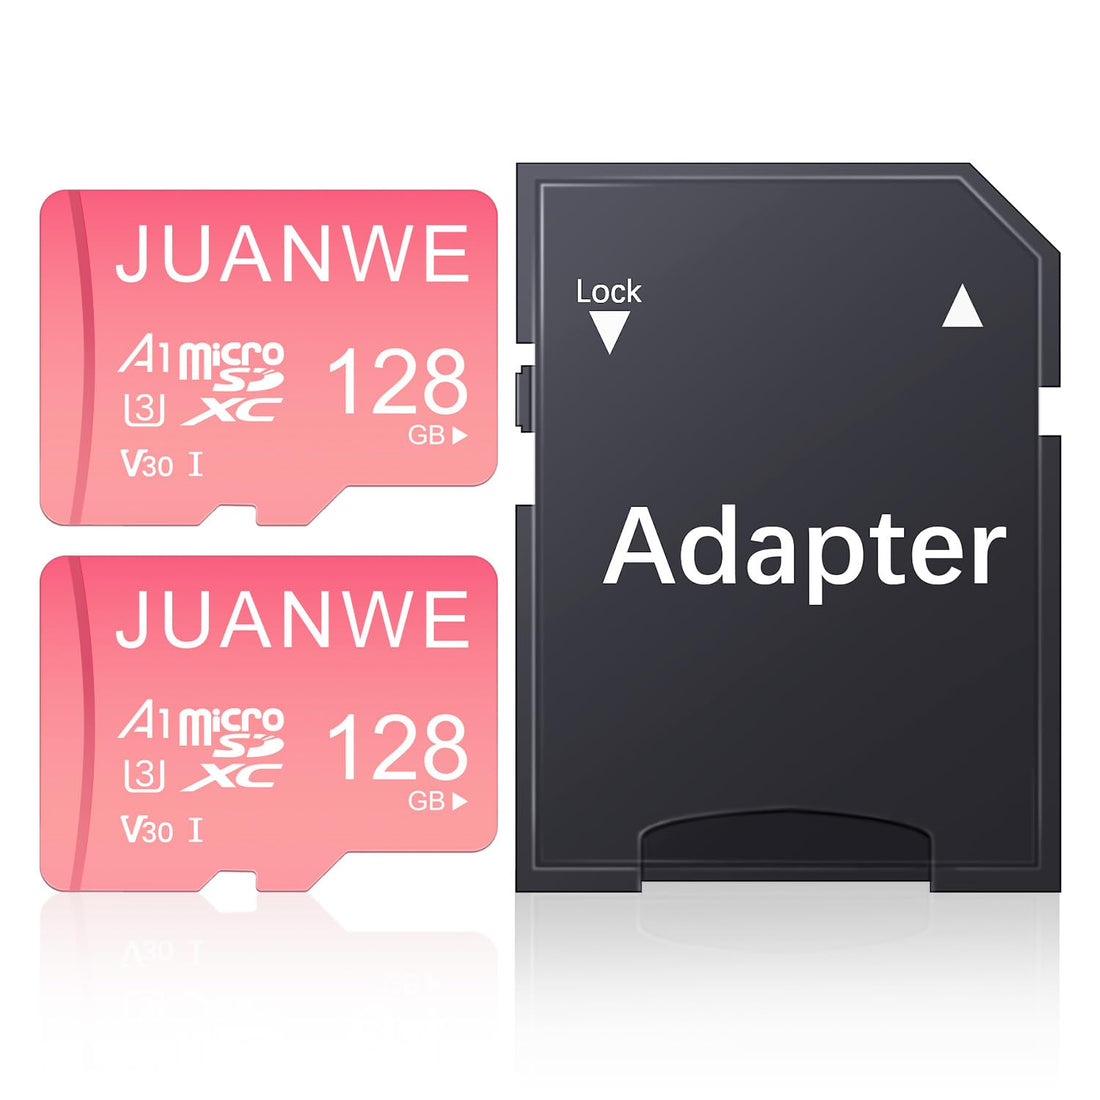 JUANWE 128GB Micro SD Card 2 Pack